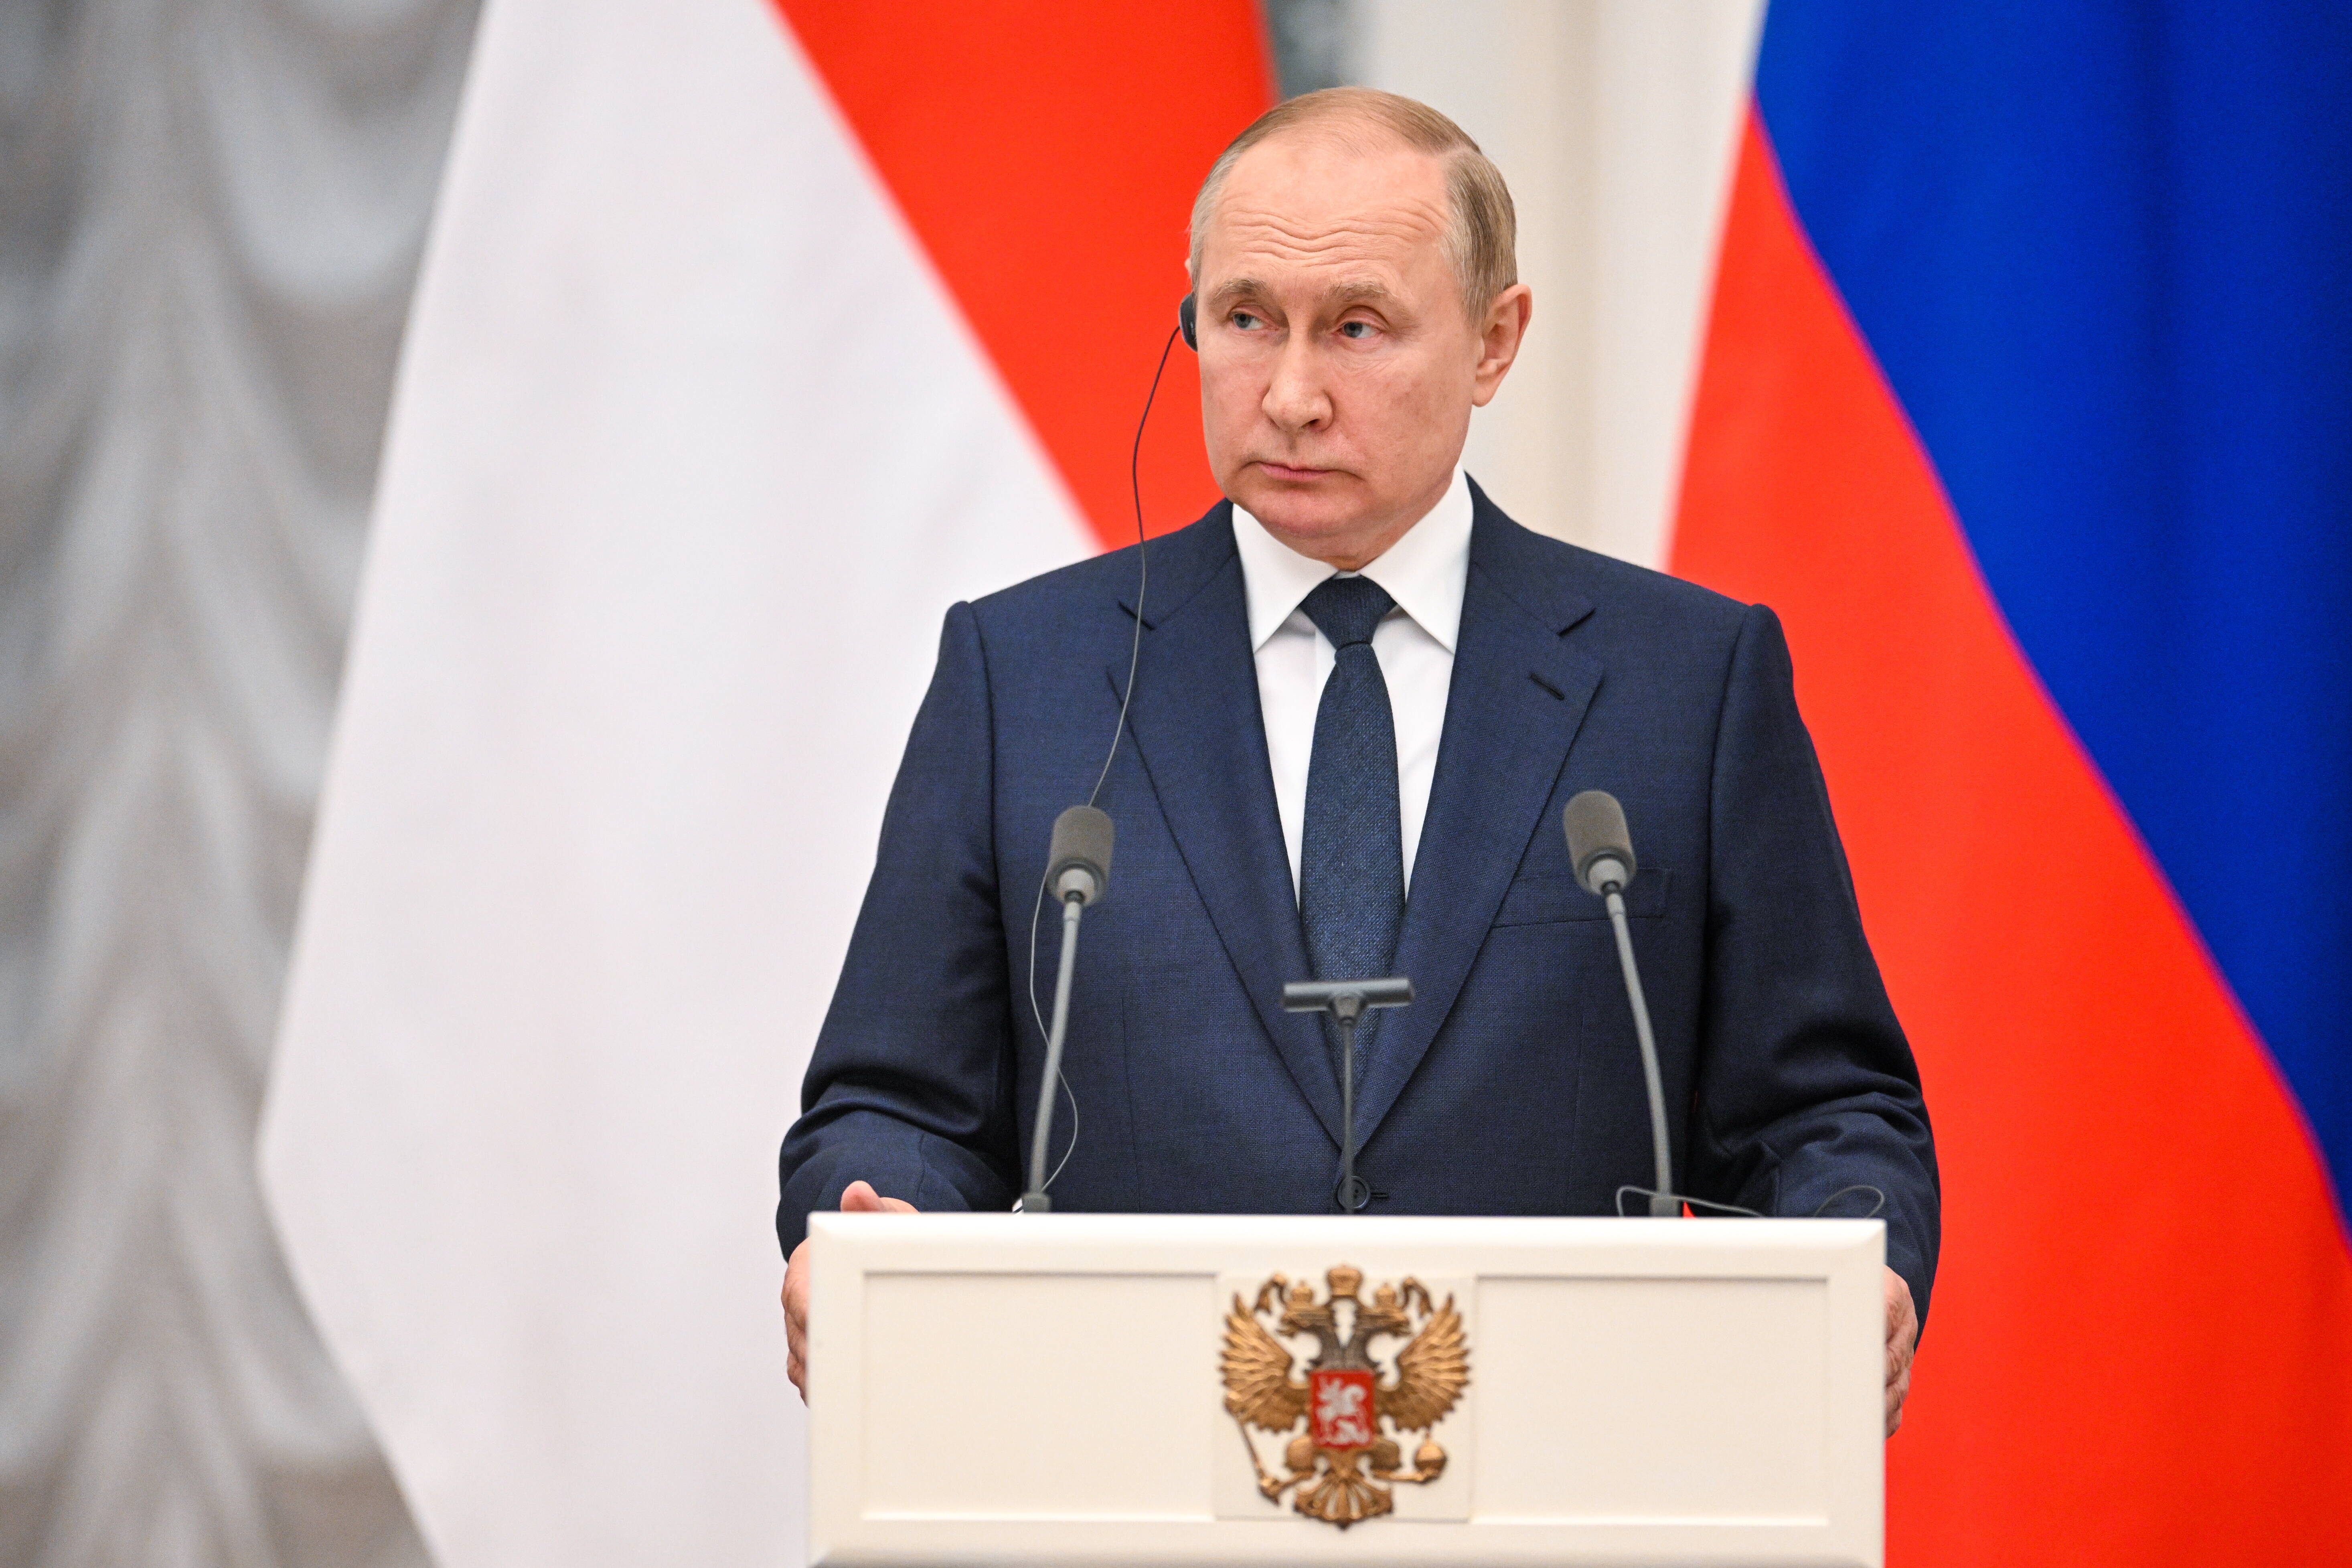 Ist Wladimir Putin nur eine Marionette? Wer ist die Dunkle Macht hinter Putin - Experte gibt Antworten!